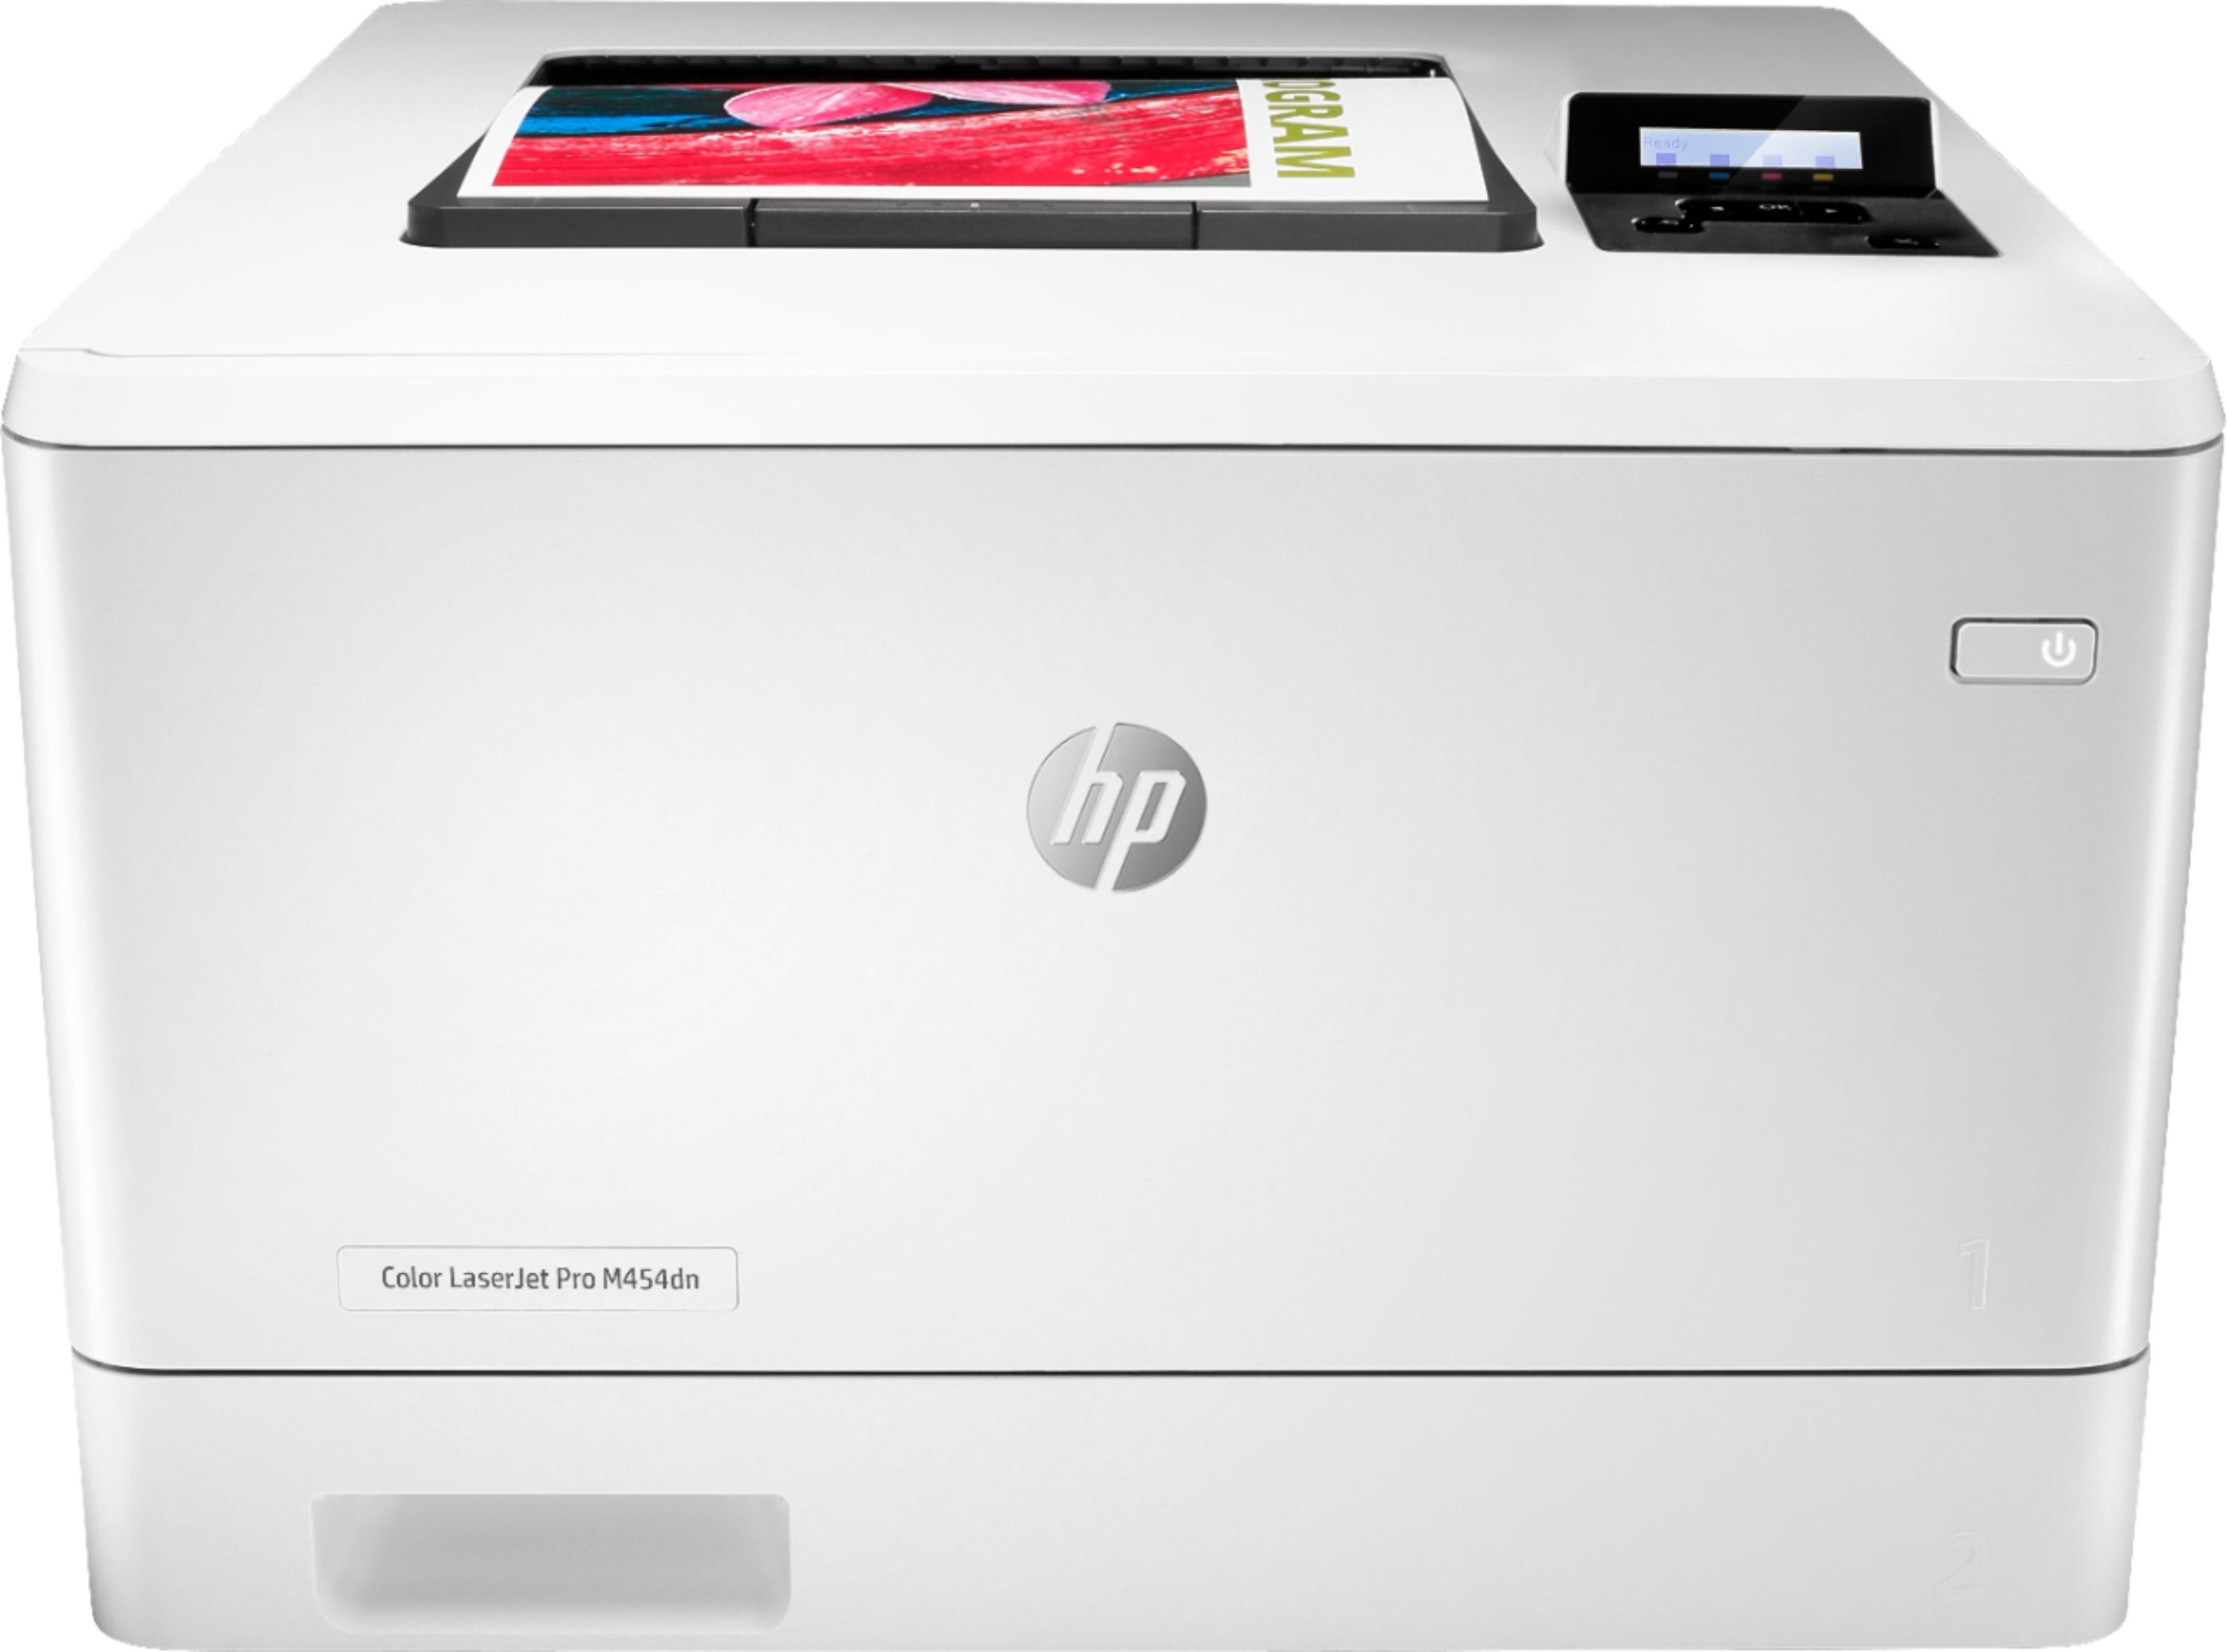 afsked Problem Tilkalde HP LaserJet Pro M454dn Color Laser Printer White W1Y44A#BGJ - Best Buy